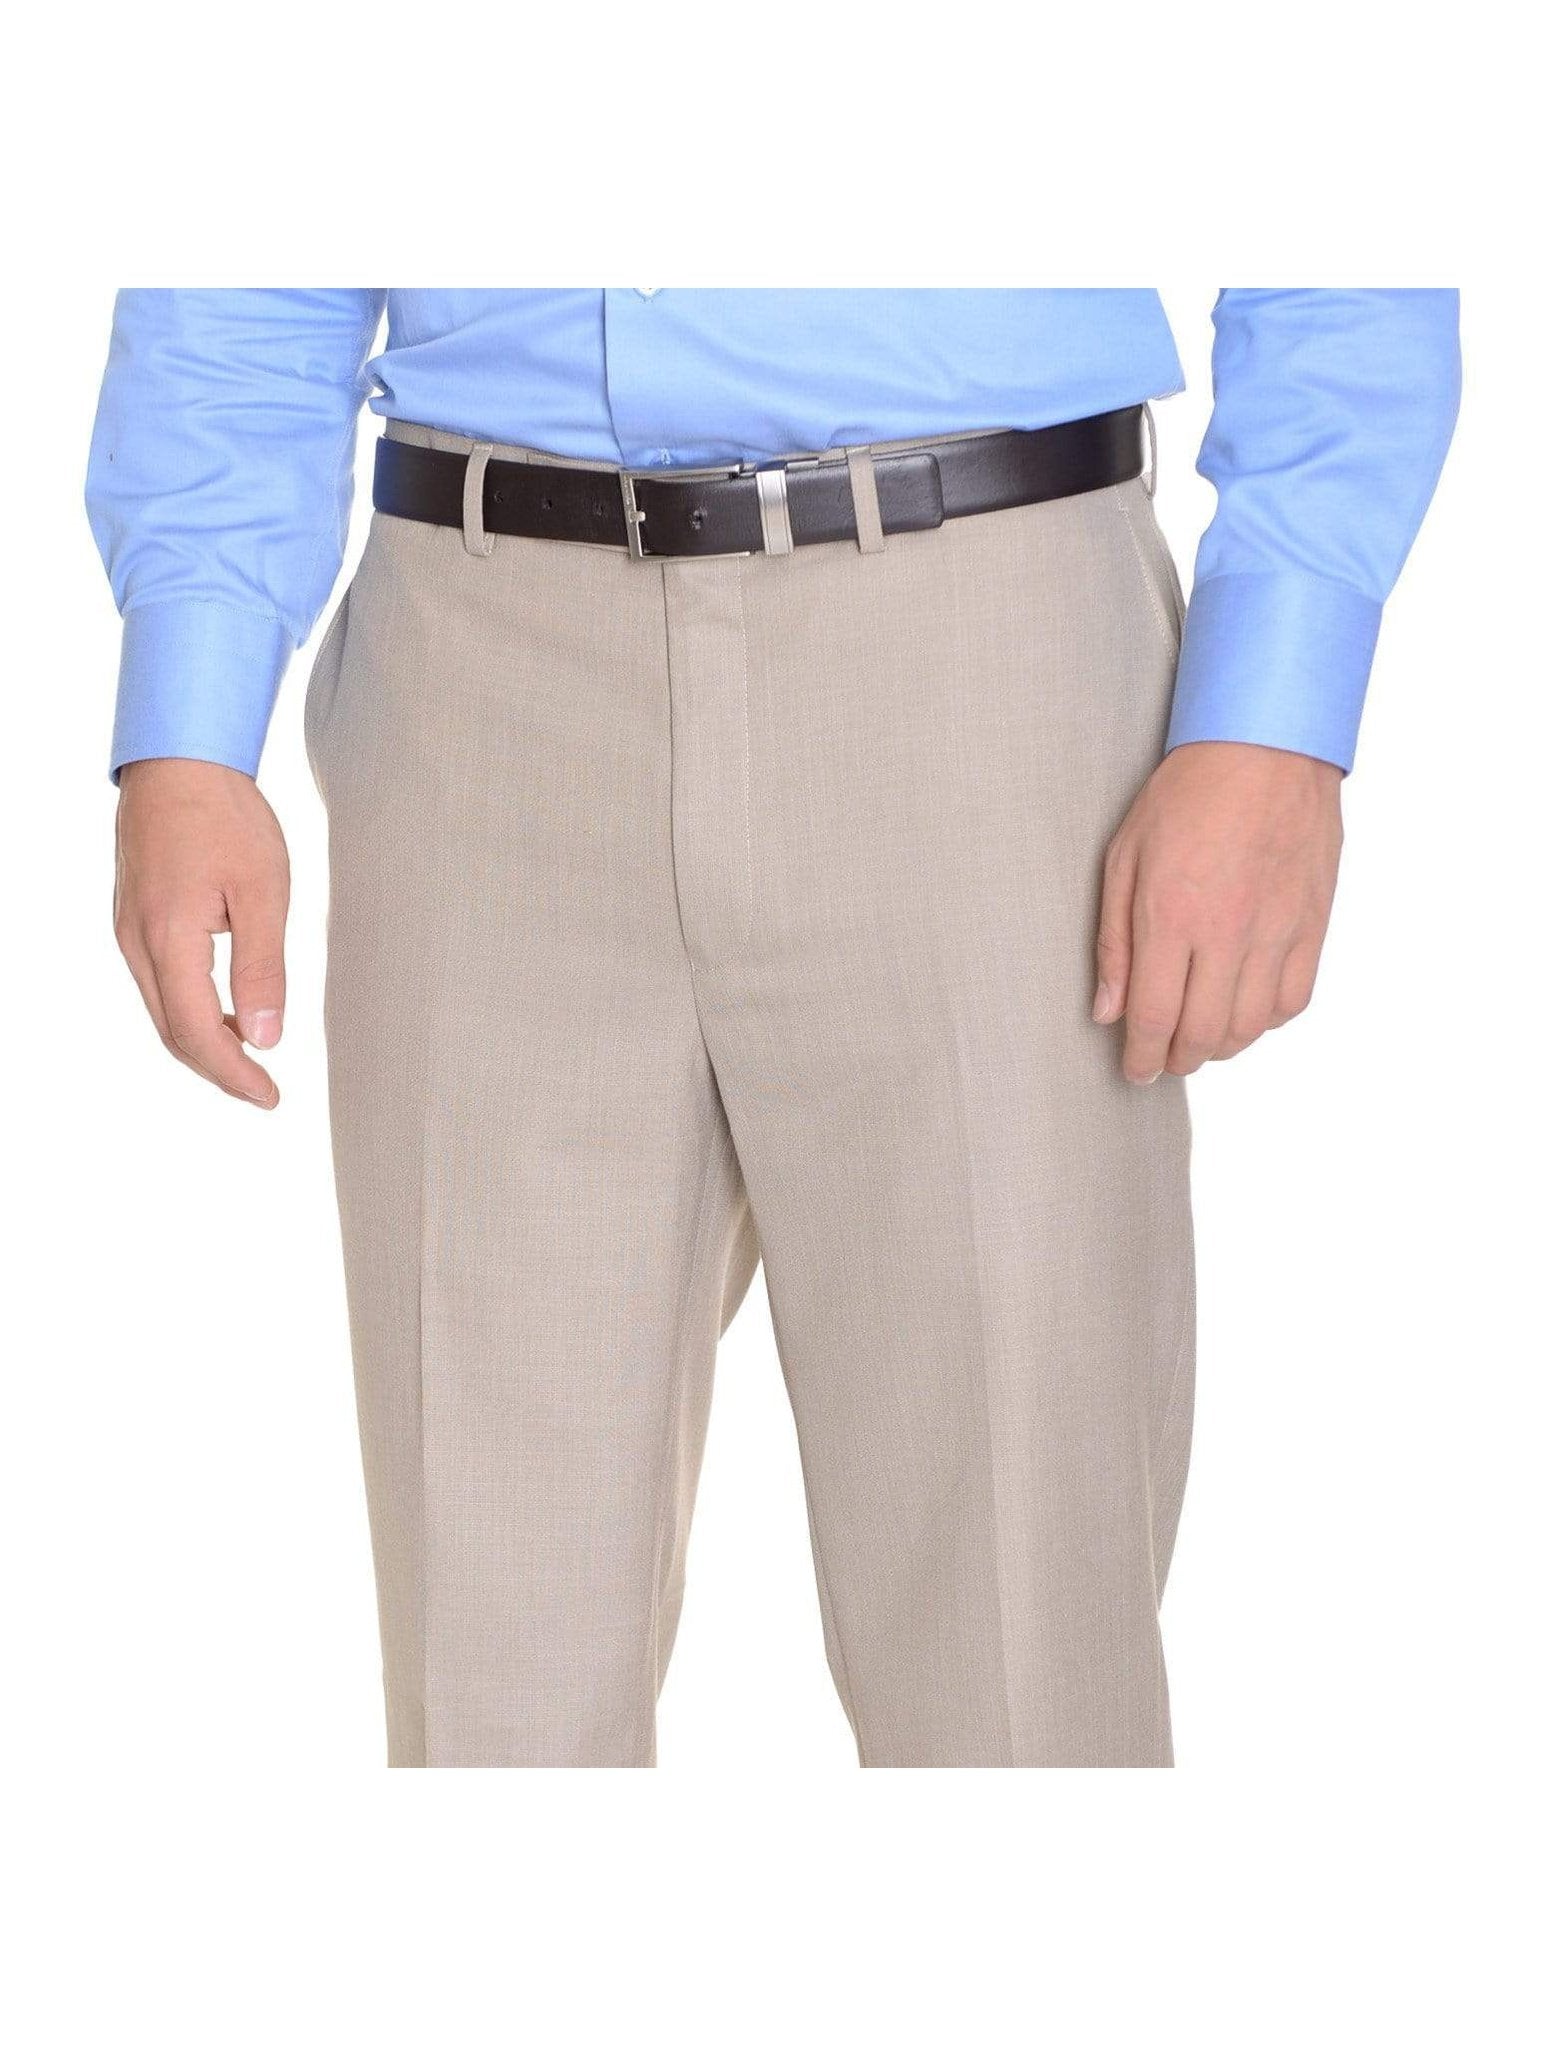 Shop Louis Raphael Blue 100% Wool Pants | The Suit Depot 32x30